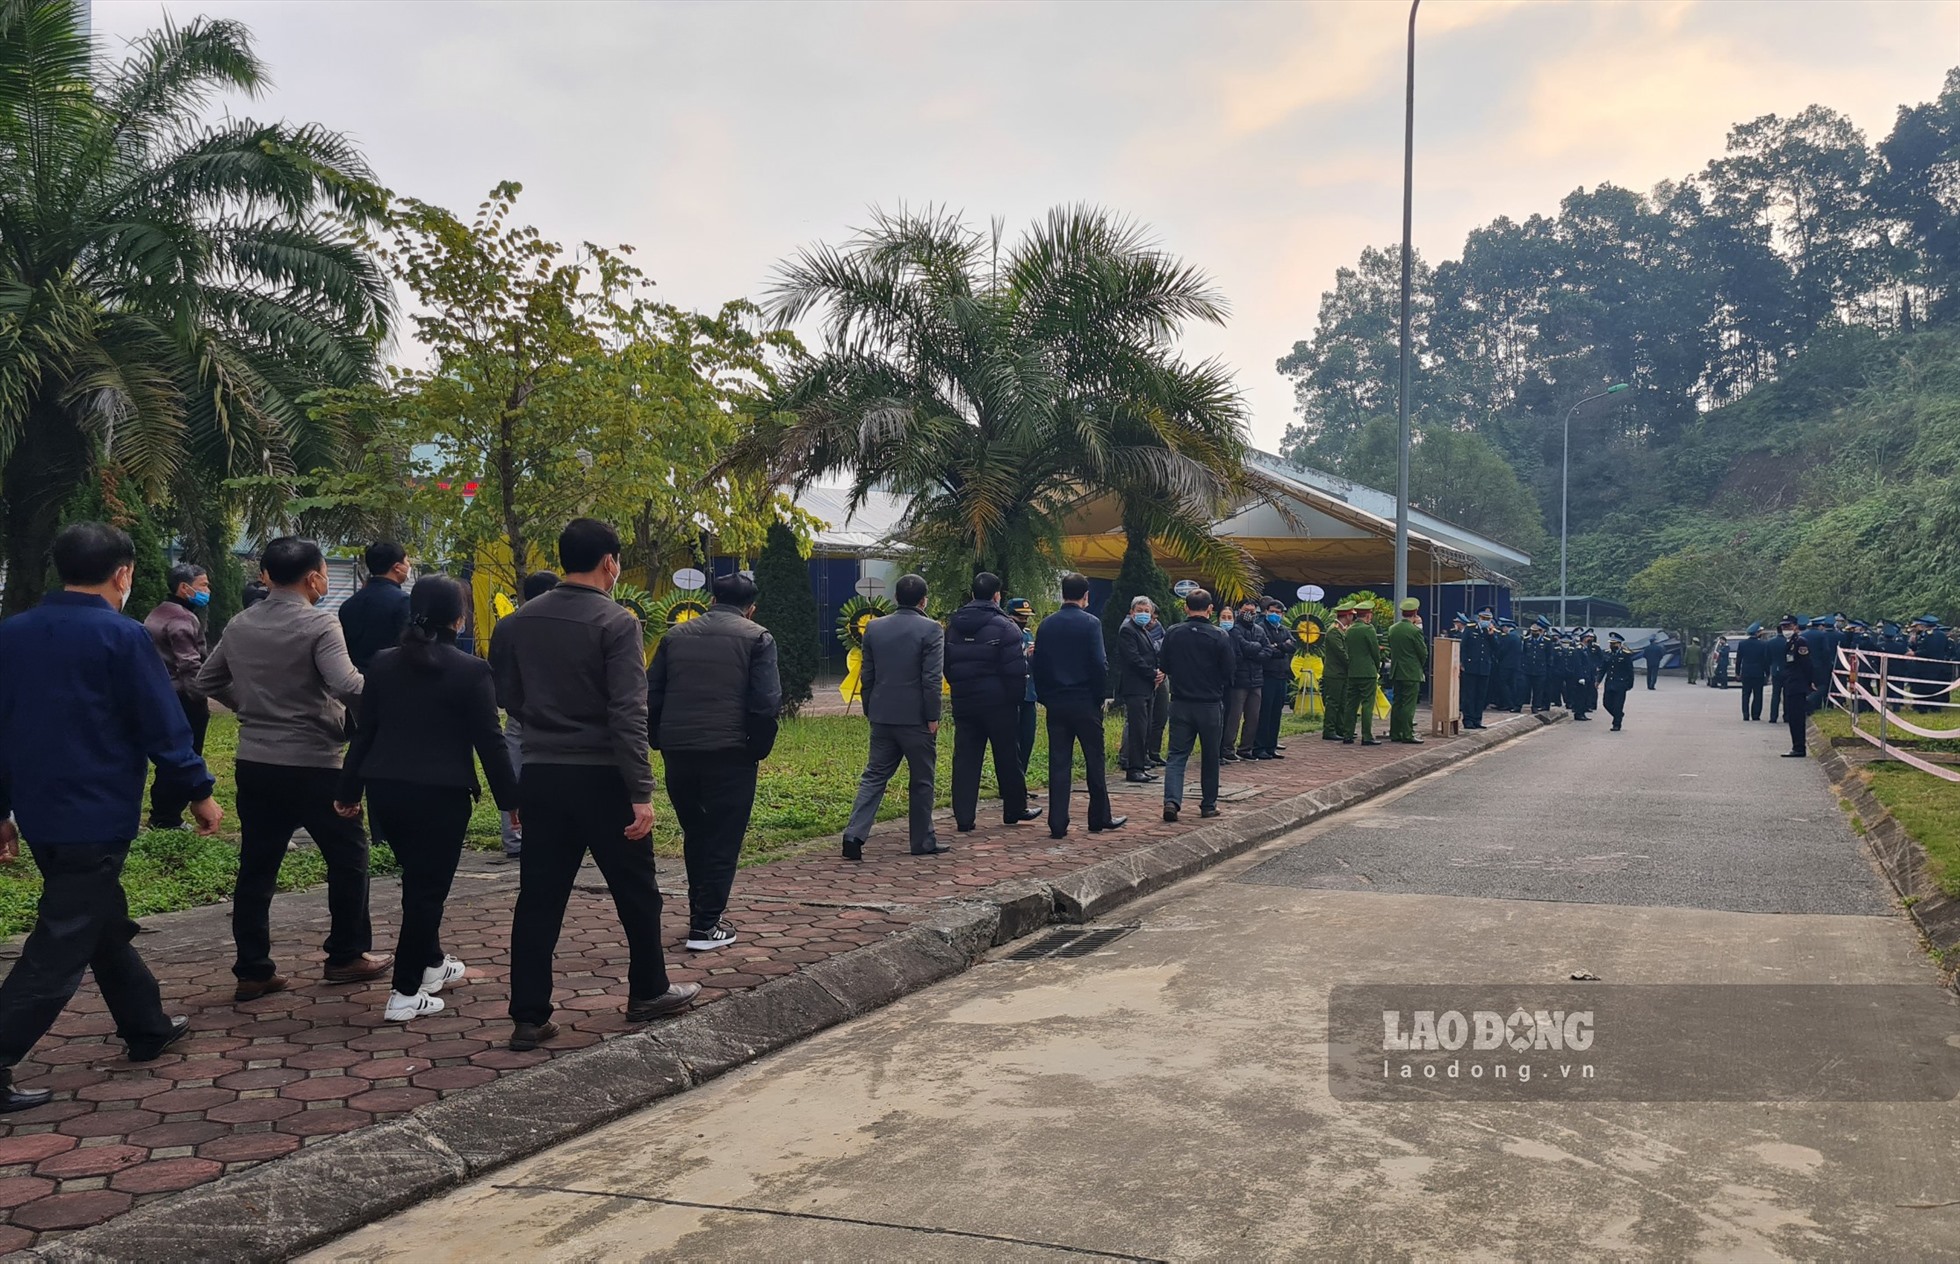 Ngay từ sớm 1.2, người thân cùng đồng đội đã đến Bệnh viện Đa khoa tỉnh Yên Bái tham dự tang lễ đại tá Trần Ngọc Duy - phi công hy sinh do rơi máy bay Su-22 tại sân bay Yên Bái.